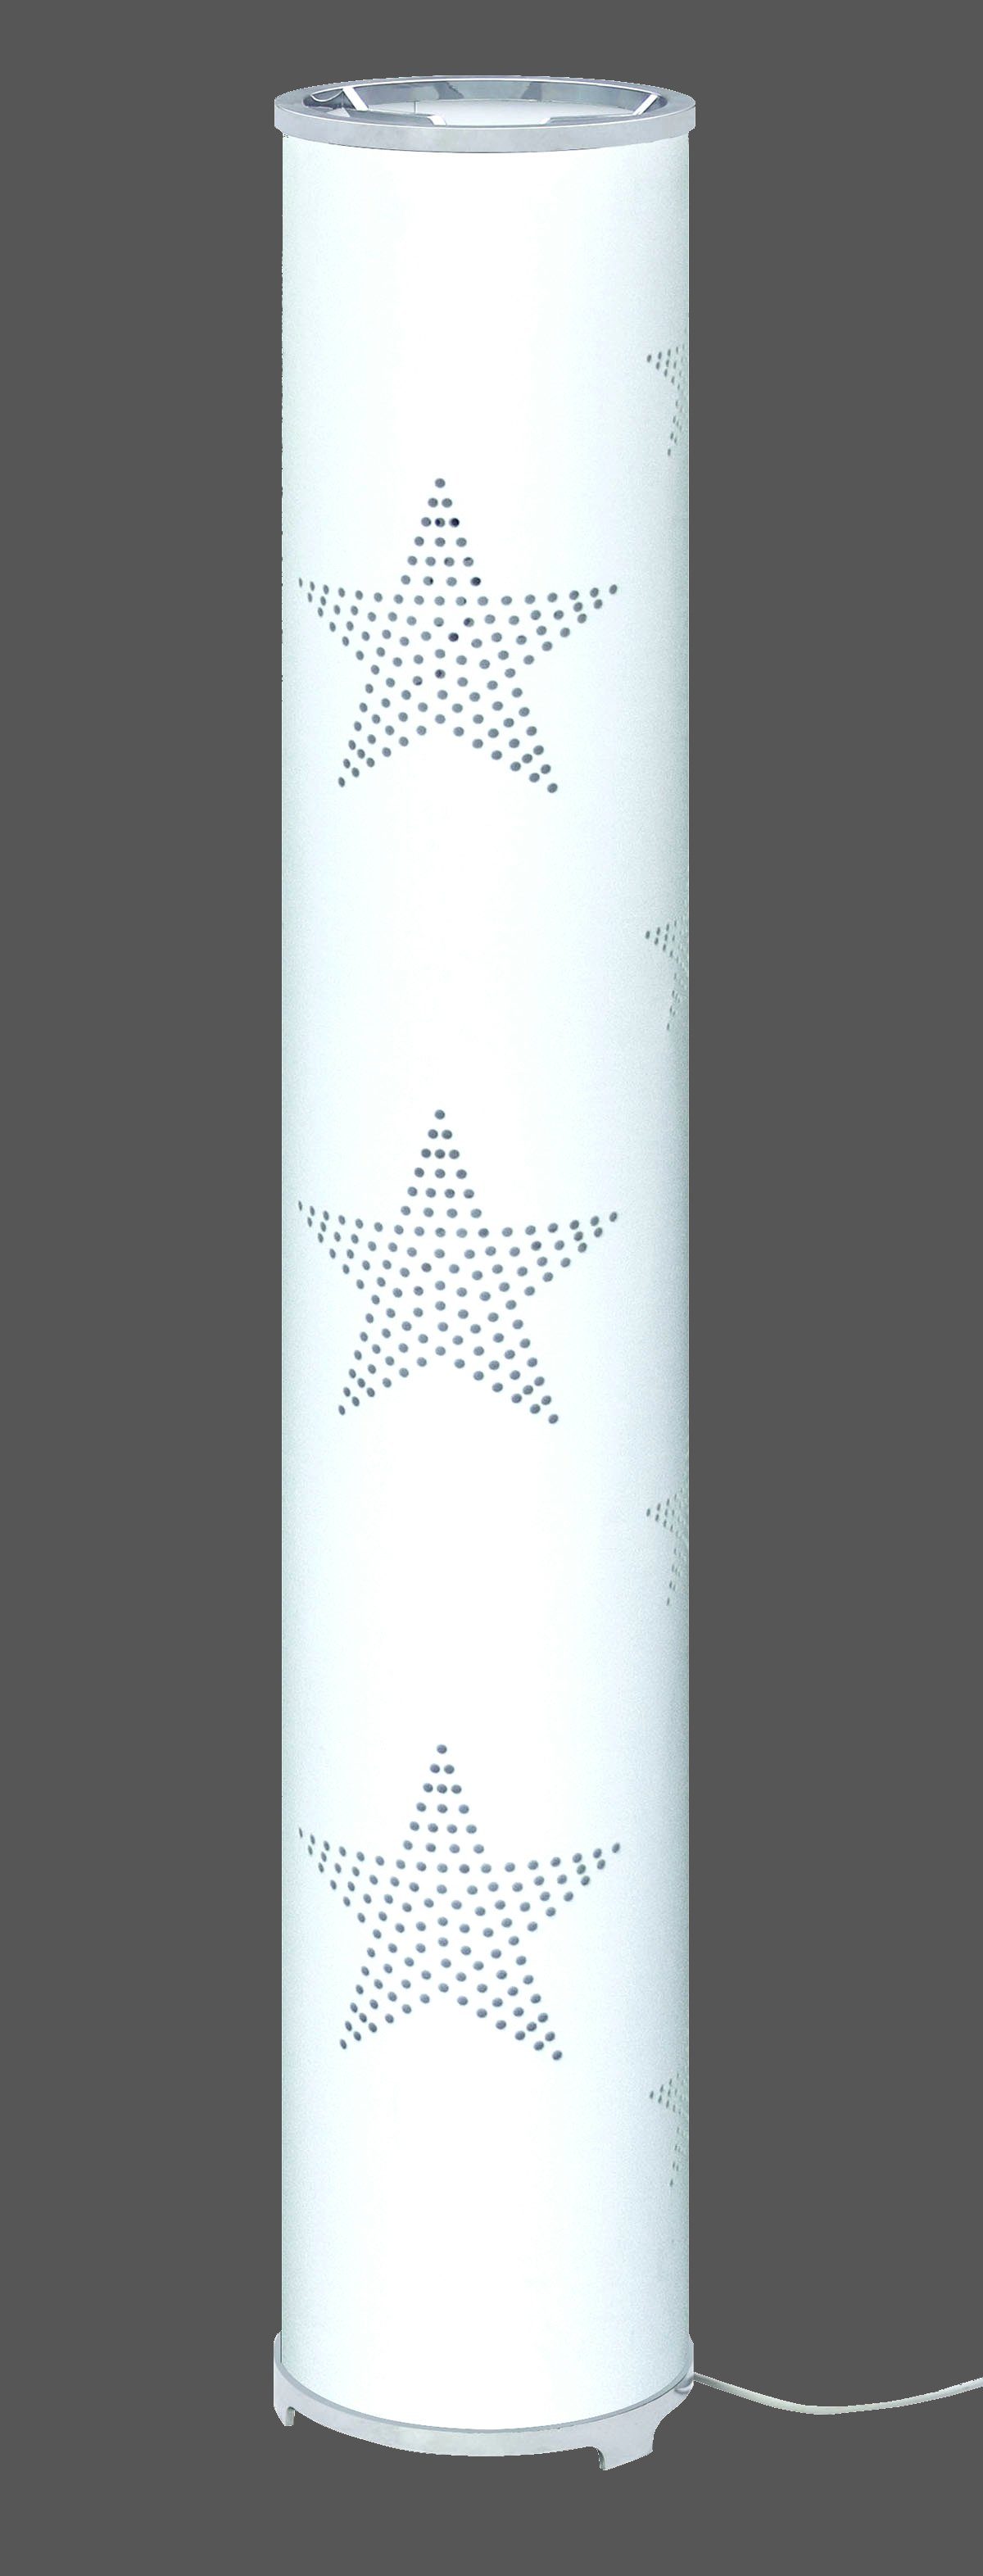 TRANGO LED Stehlampe, 1246L Modern Design Stehleuchte inkl. 2x E14 LED Leuchtmittel *STARS* Stehlampe mit Stoffschirm in WEISS mit Sternen-Dekor, Standleuchte, Deko-Stehlampe, Wohnzimmer Lampe, Höhe ca. 100cm Weiß